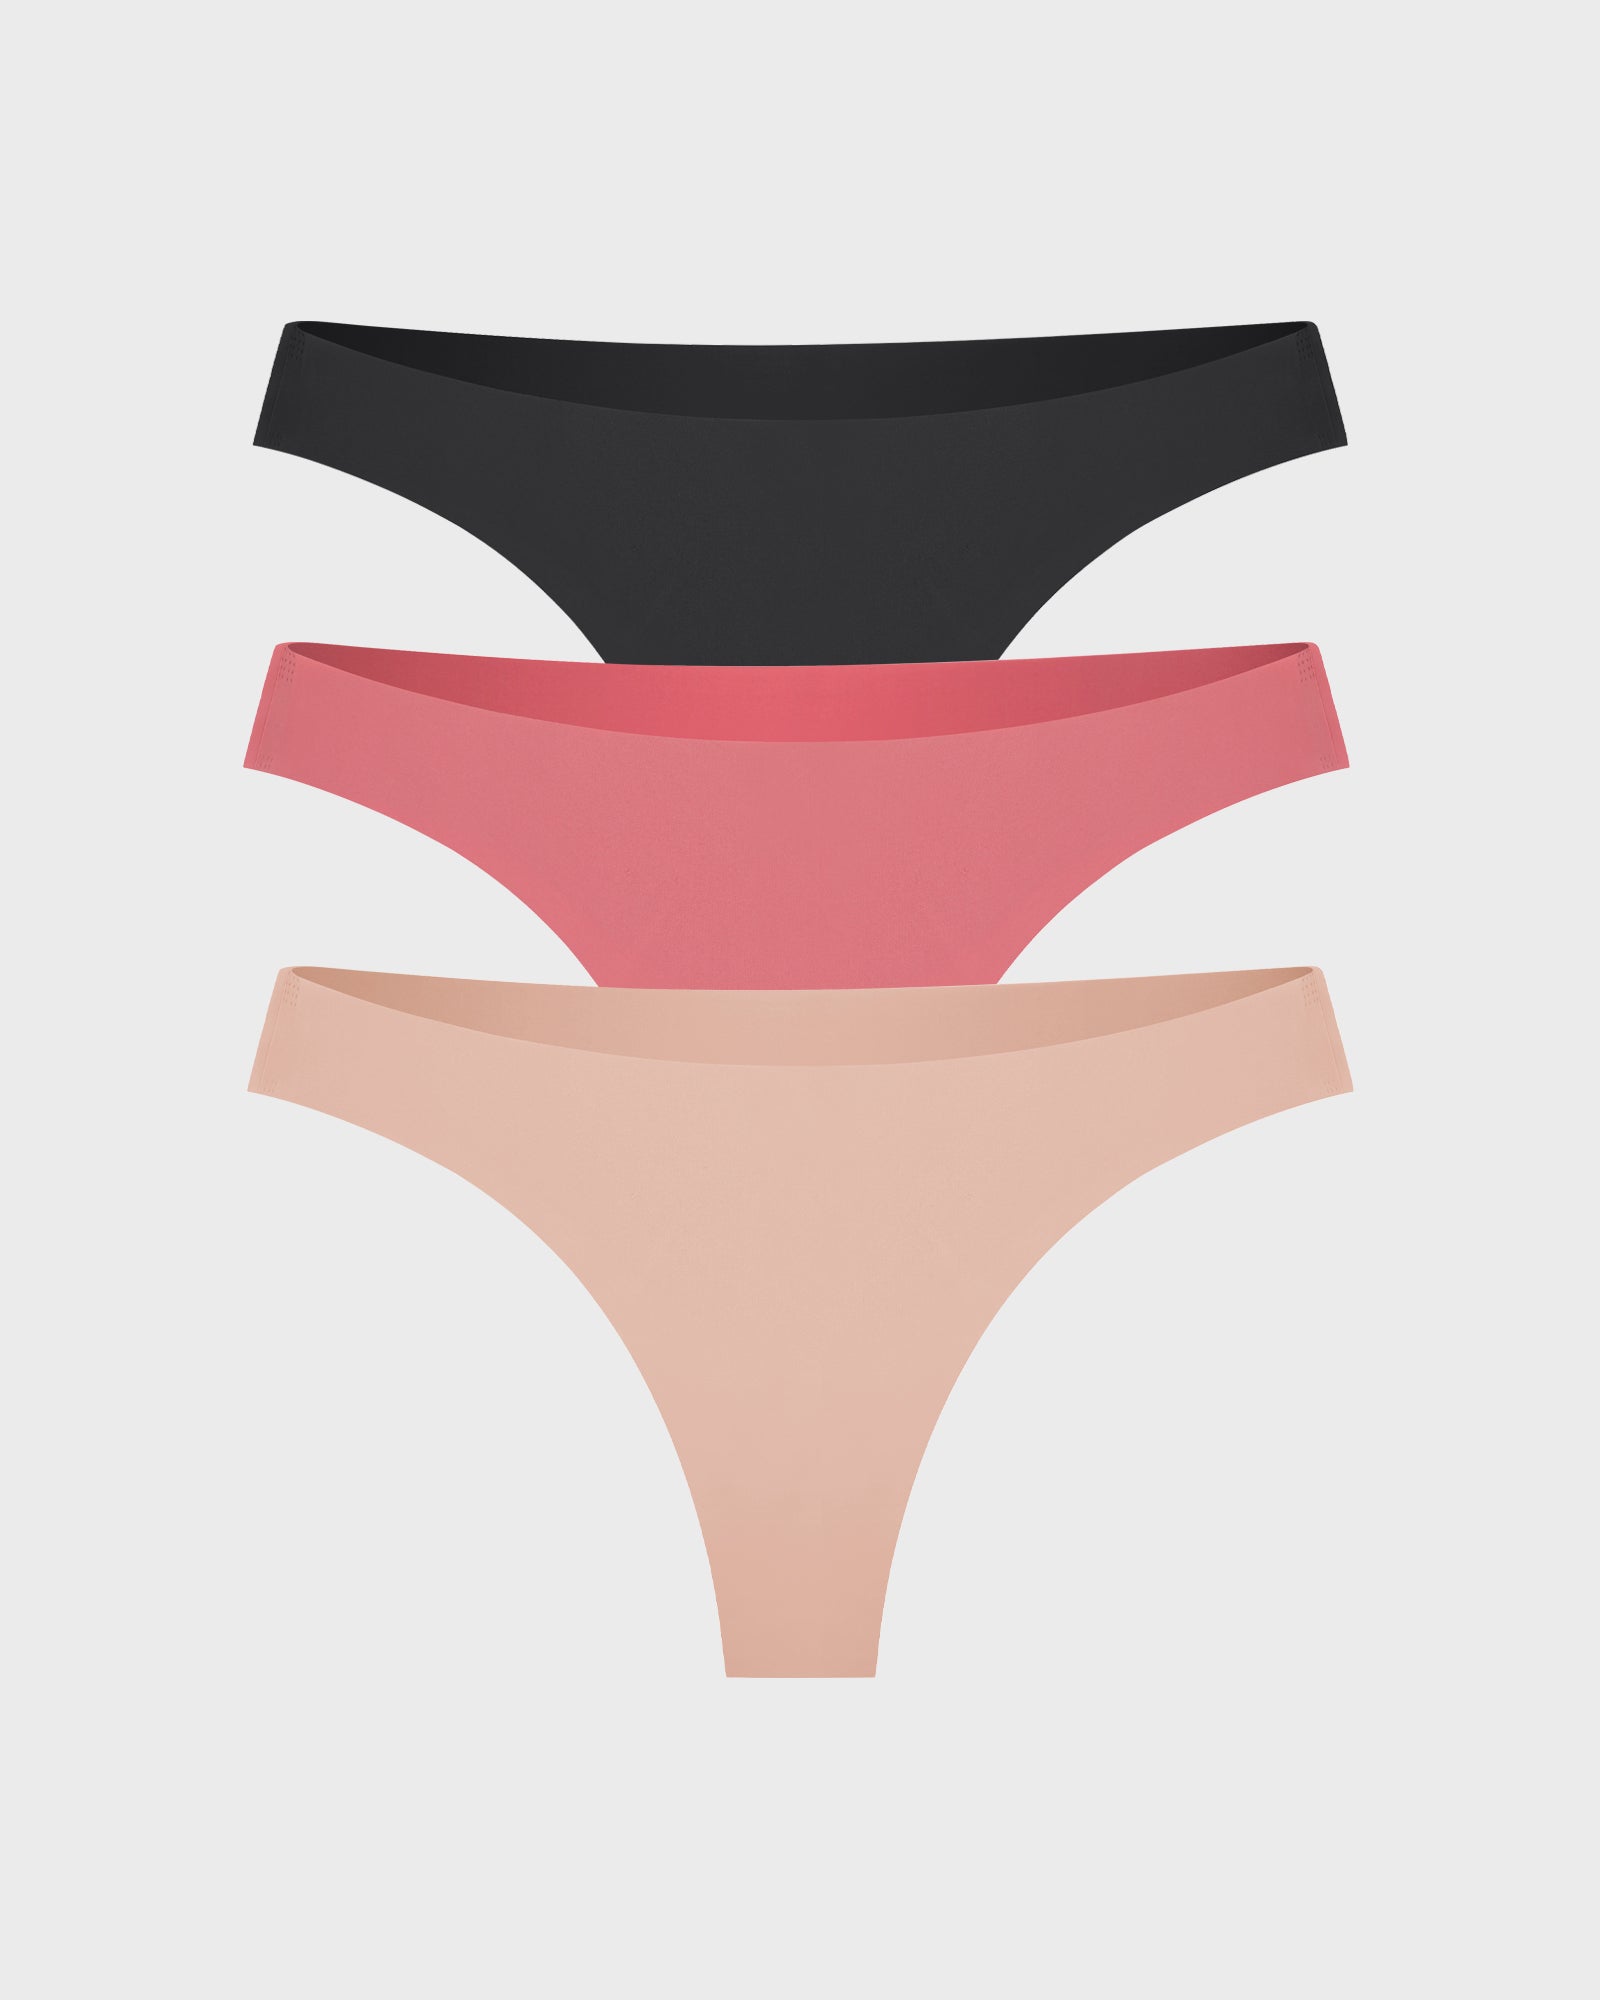 AirWear Best Women's Underwear Bundle Set of 3 | Cosmolle